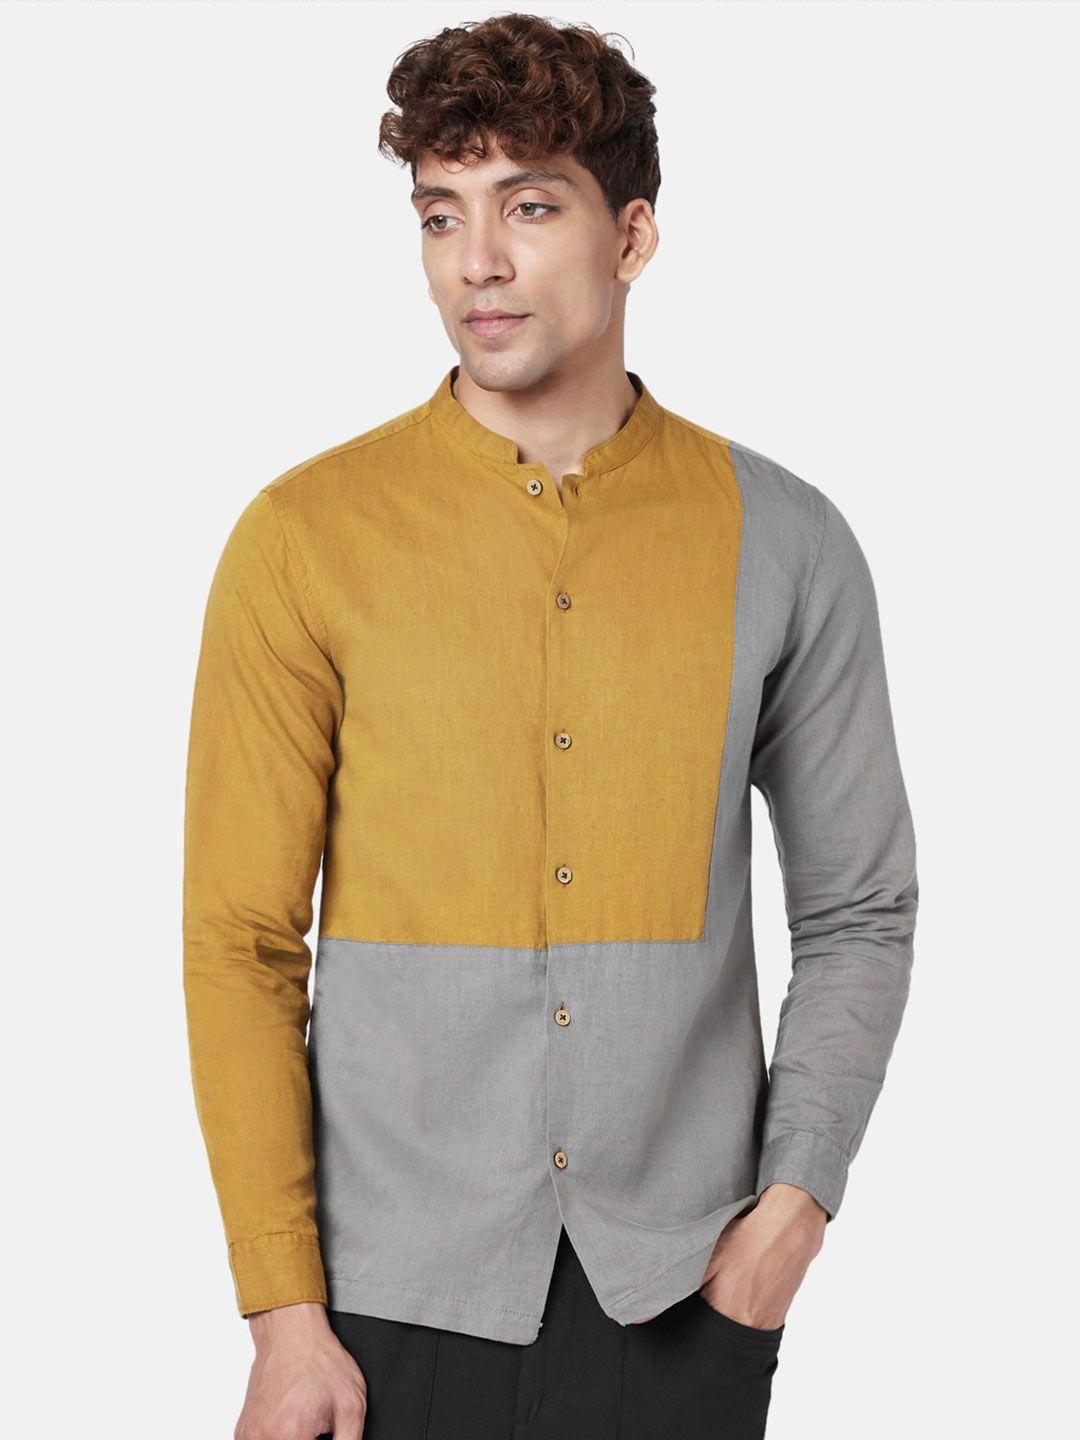 7 alt by pantaloons slim fit colourblocked cotton linen casual shirt